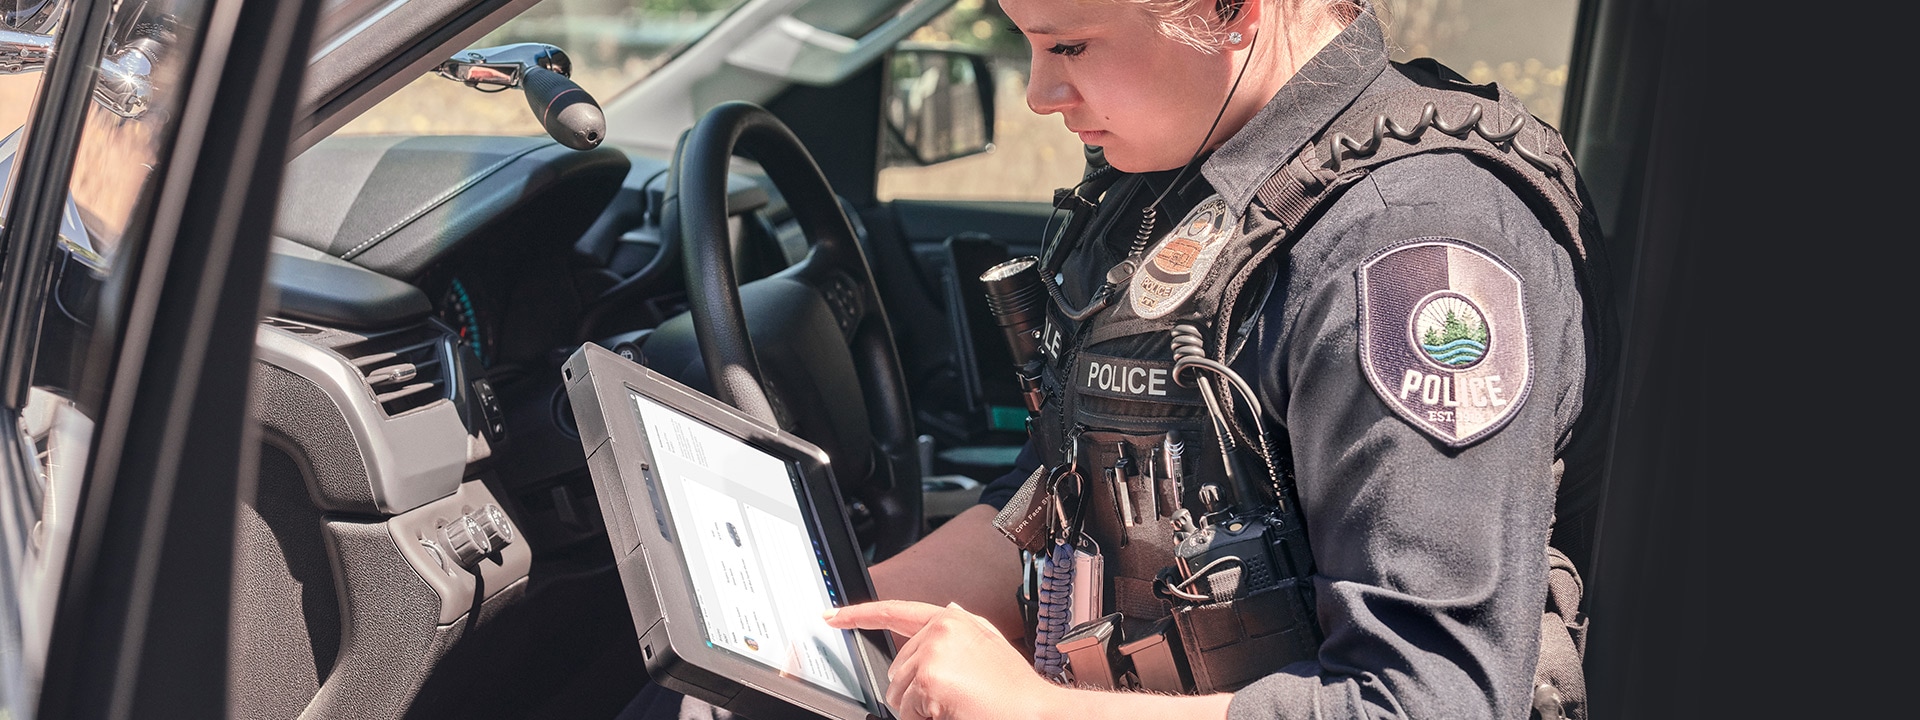 Egy rendőrnő a járőrkocsijának utasülésén ülve egy Surface Pro készüléket használ